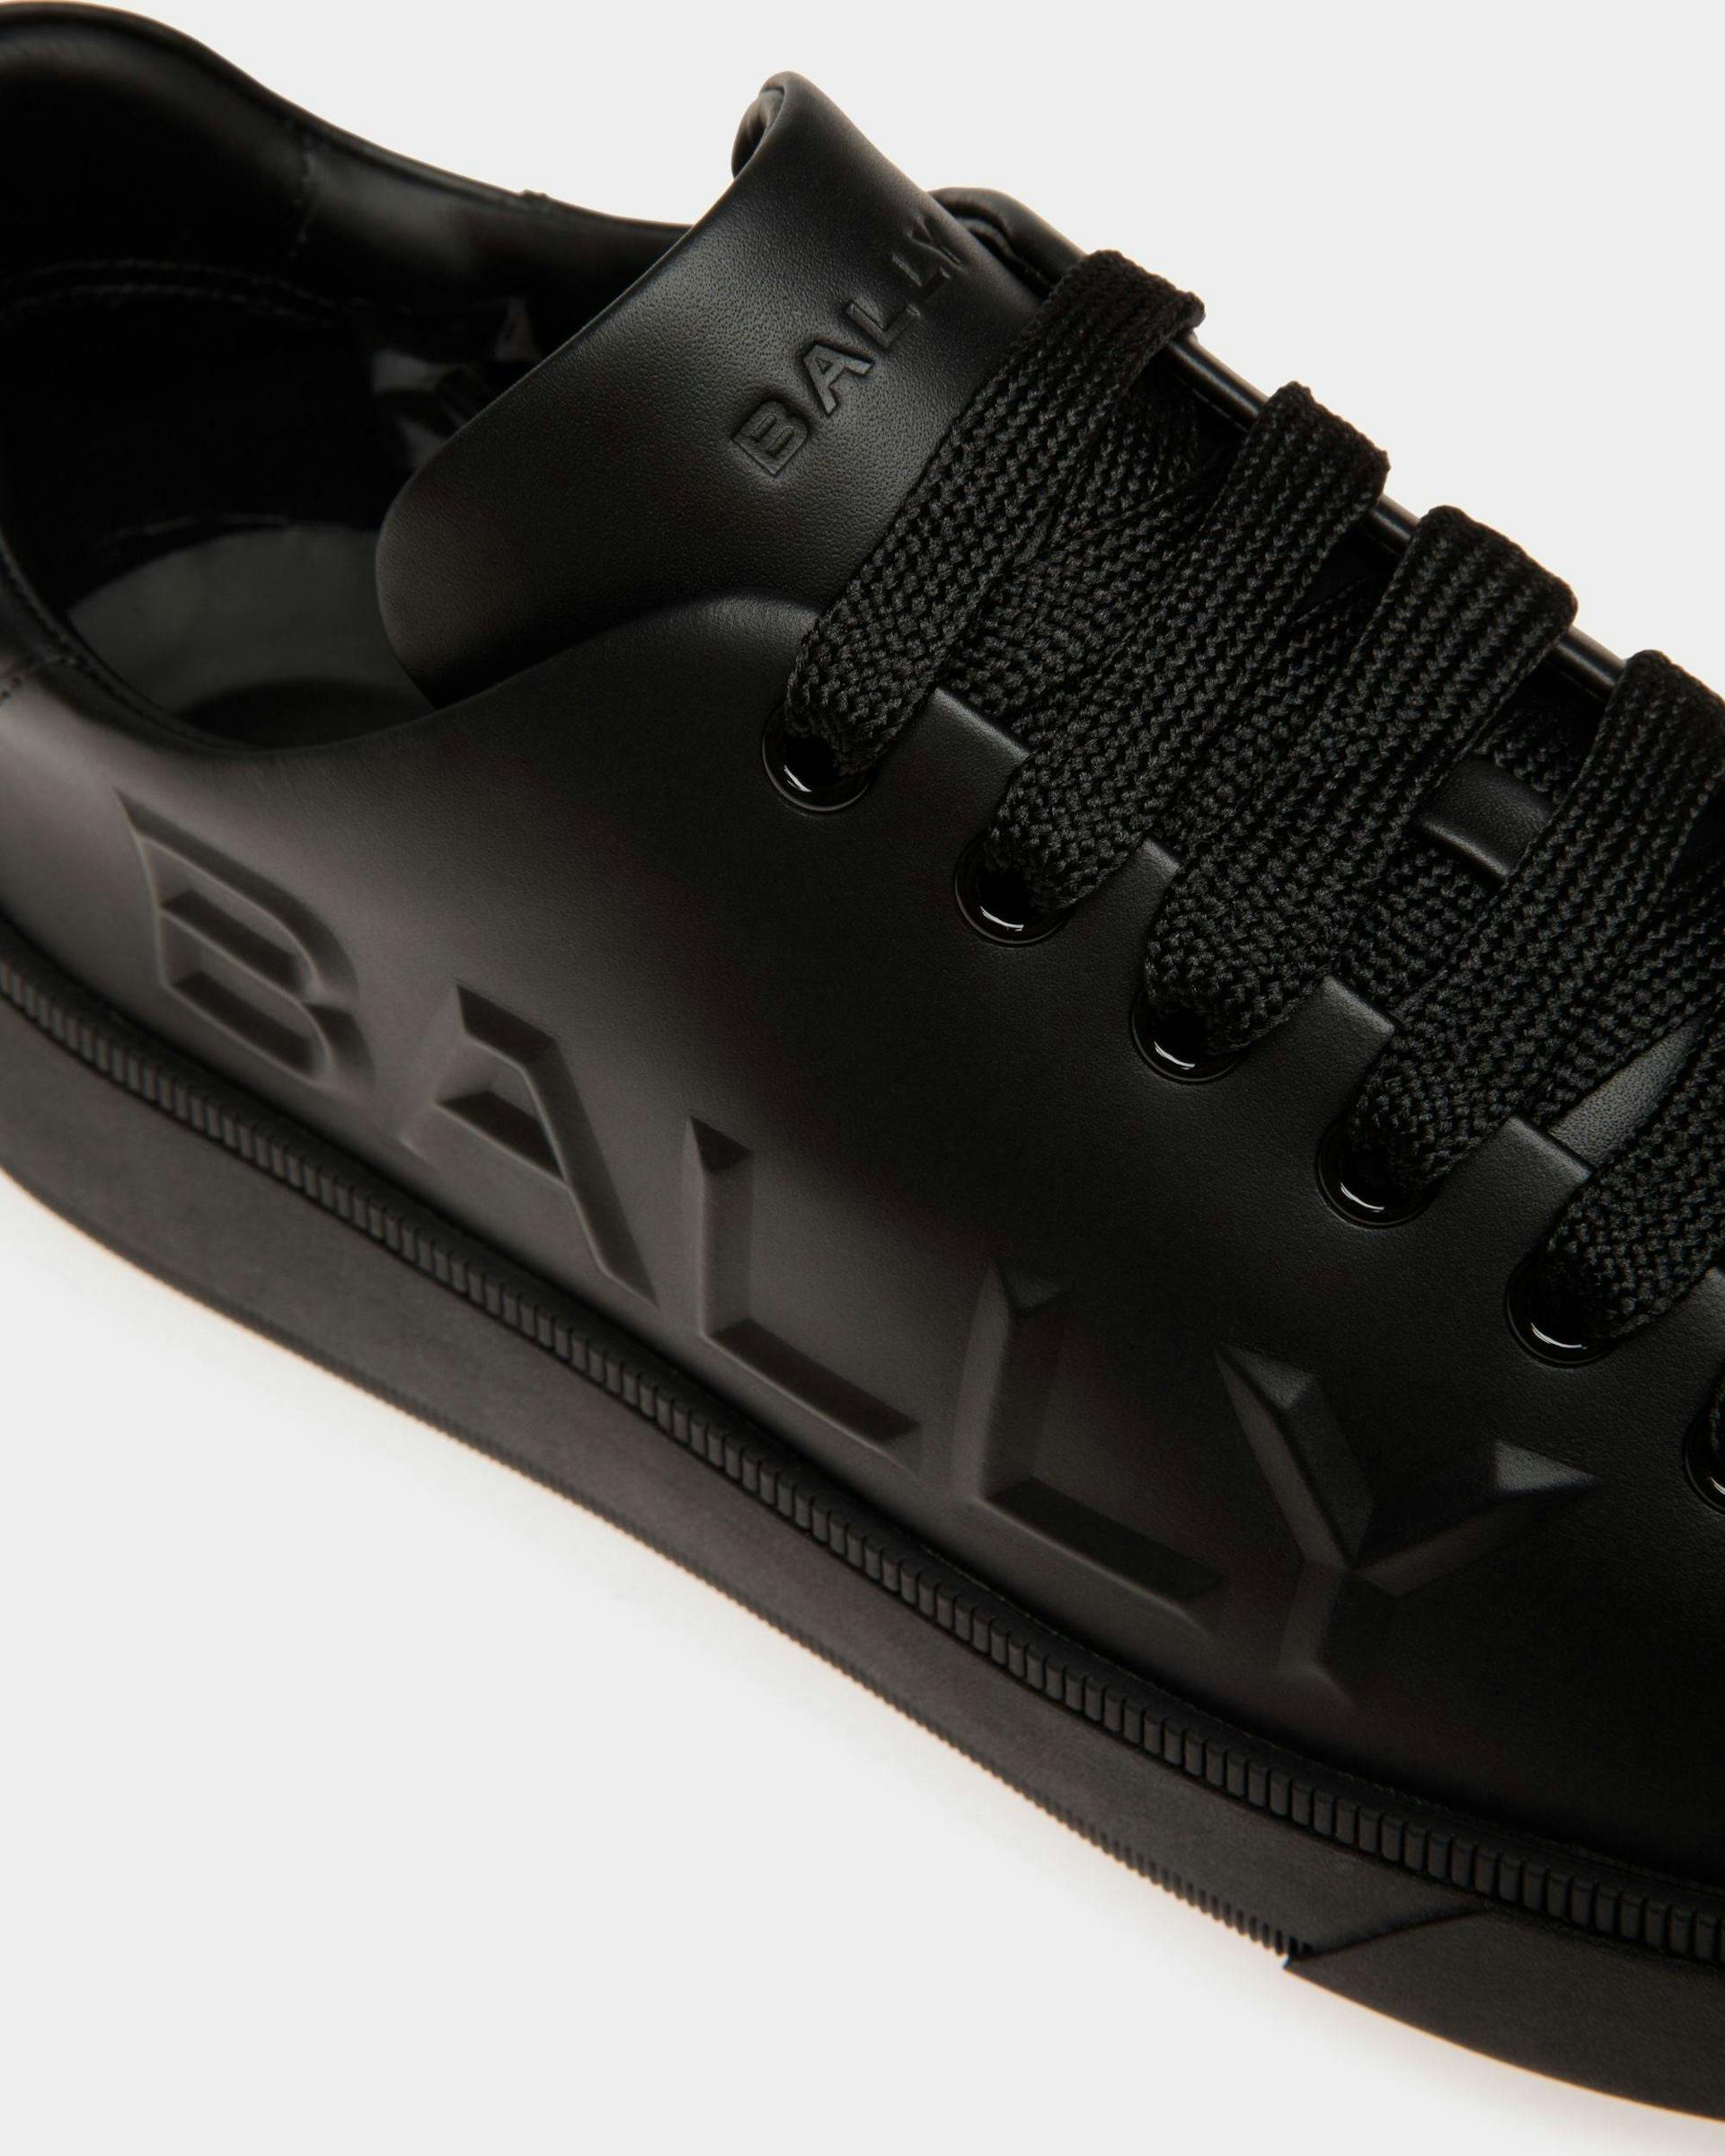 Men's Raise Sneaker in Black Leather | Bally | Still Life Detail